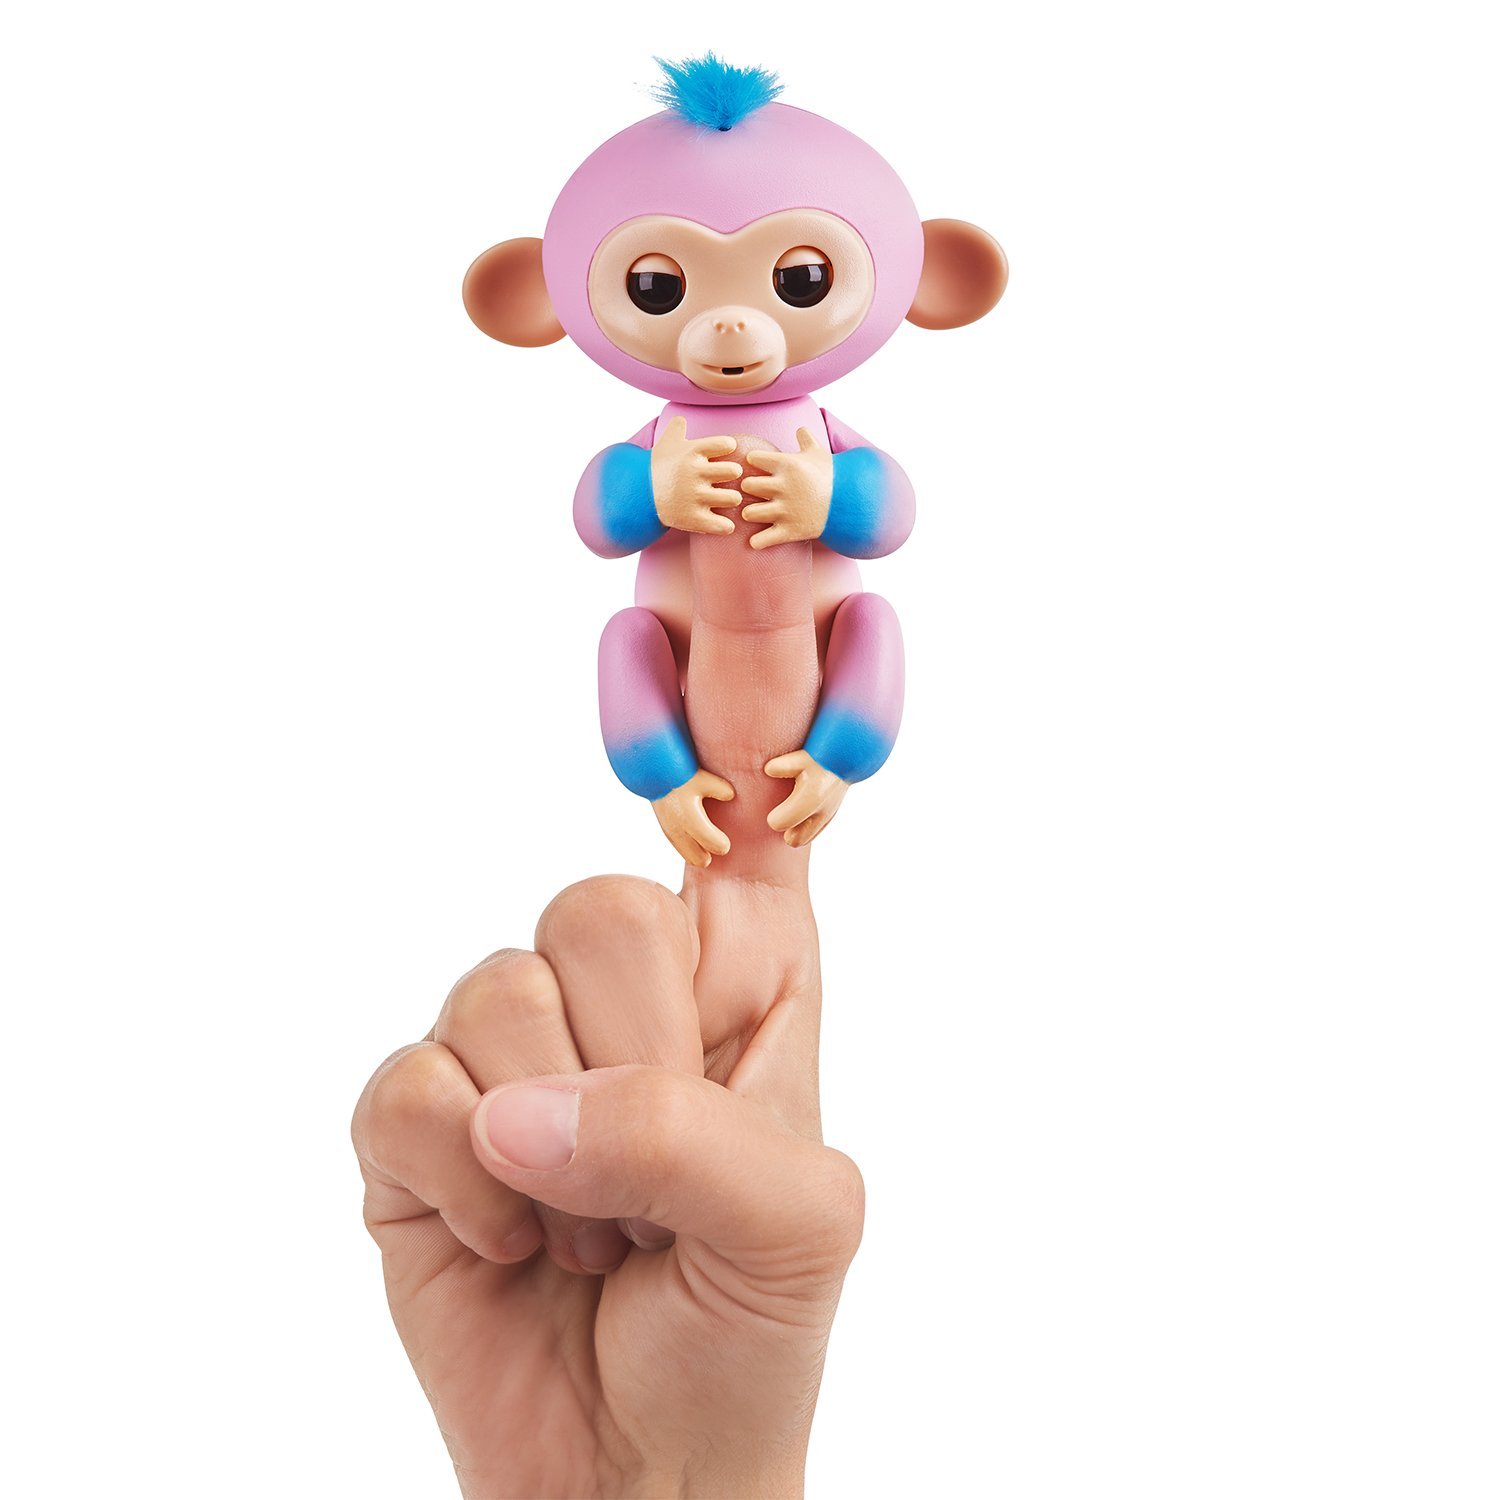 Интерактивная обезьянка Канди, цвет - розовая и голубая, 12 см.  